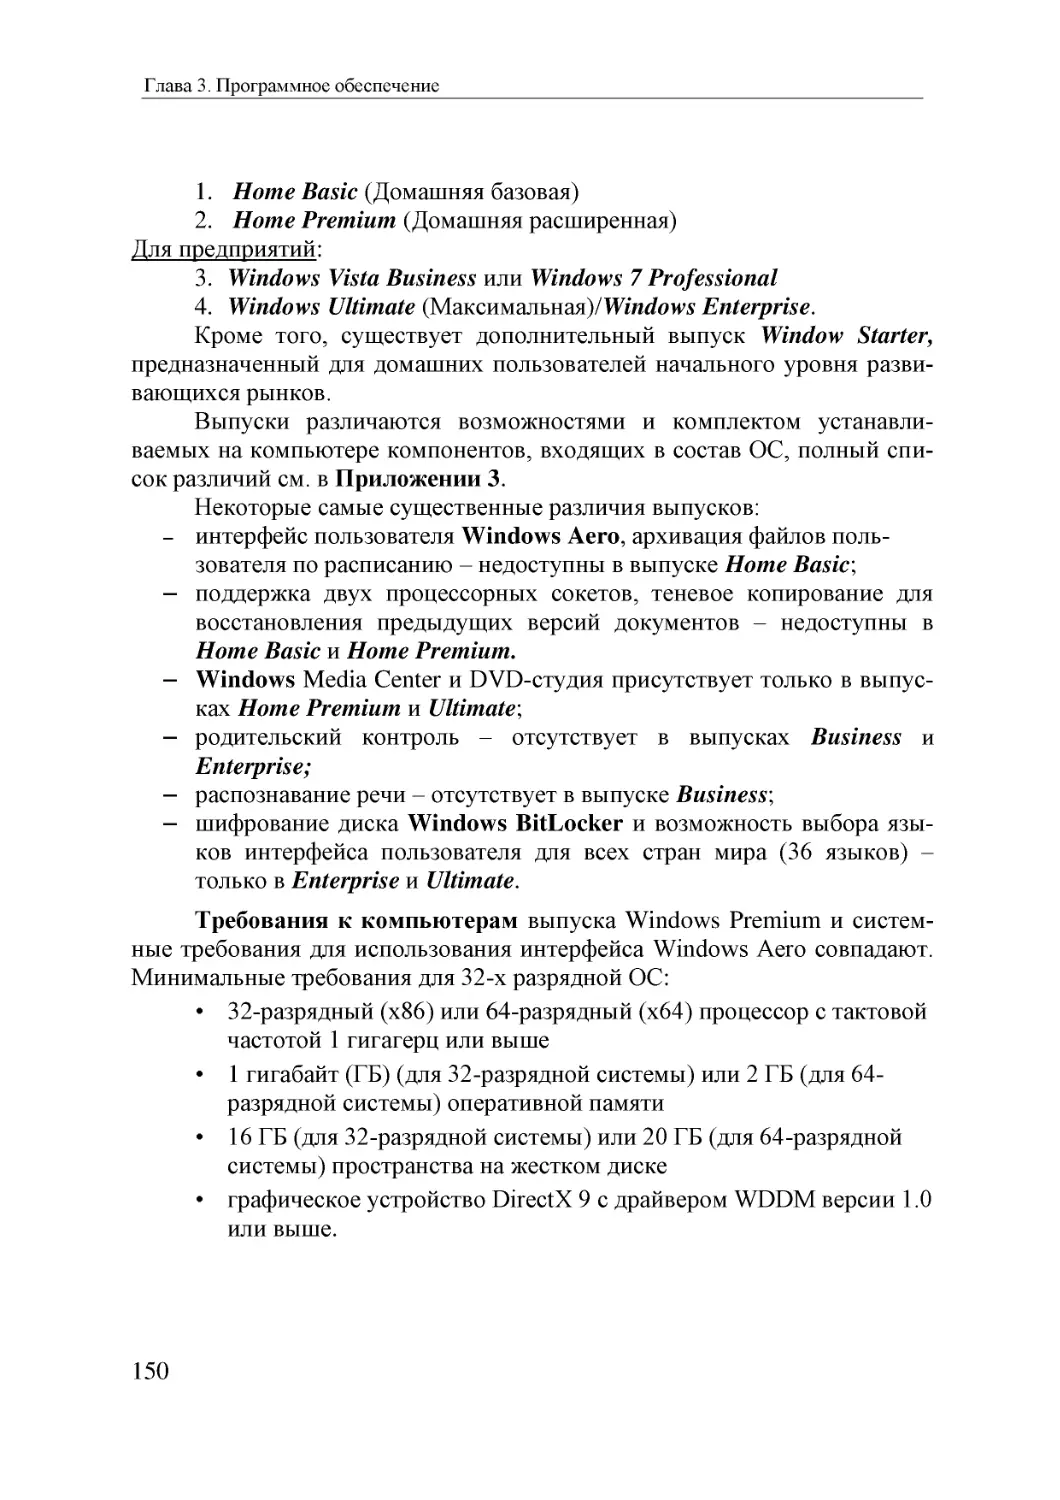 Informatika_Uchebnik_dlya_vuzov_2010 150